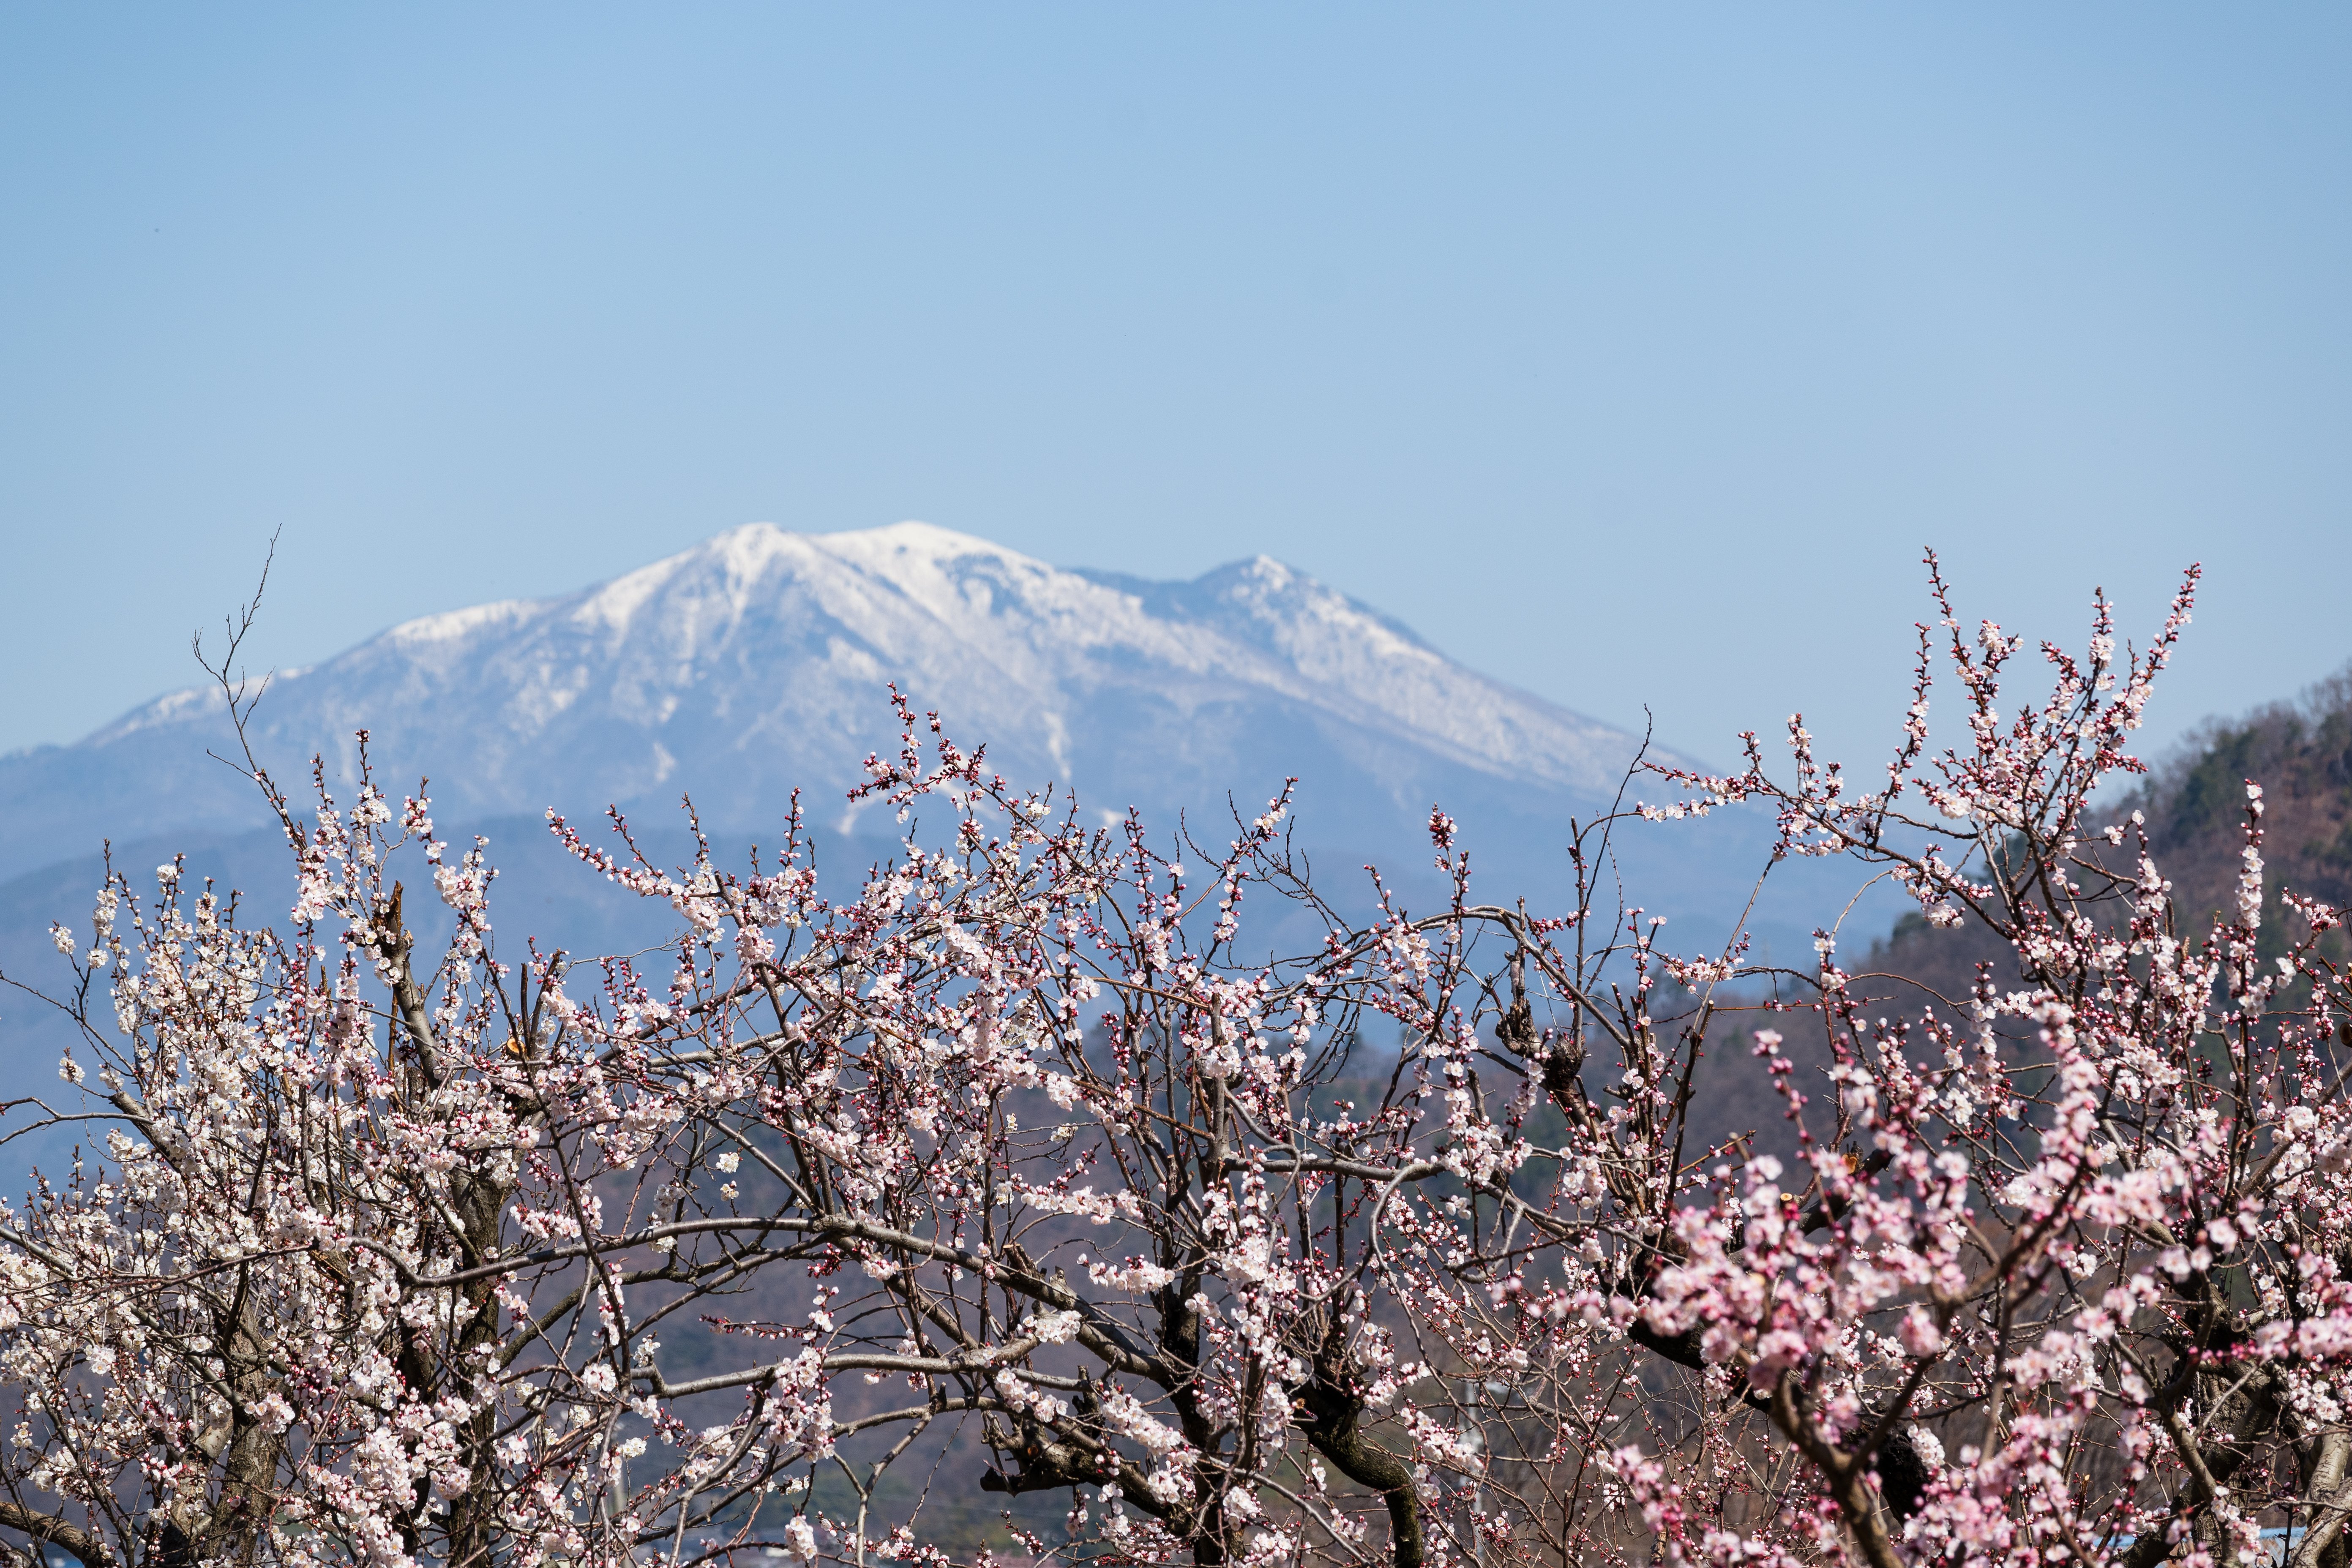 飯縄山の麓で春探し。自然と山菜を楽しむ